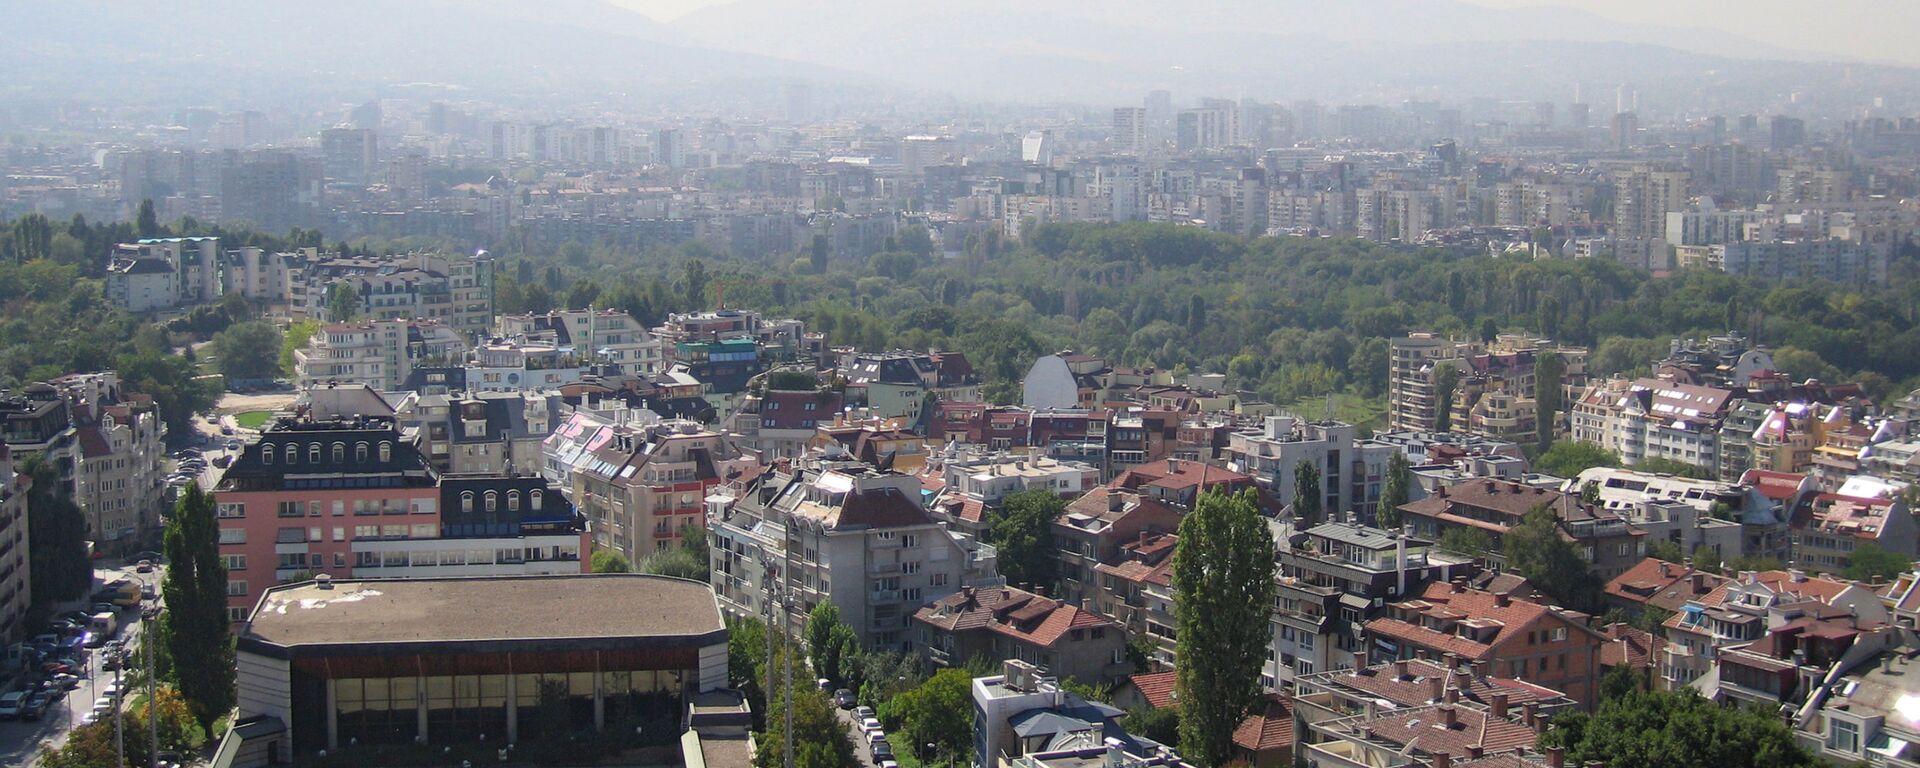 Поглед на главни град Бугарске, Софију - Sputnik Србија, 1920, 04.07.2022